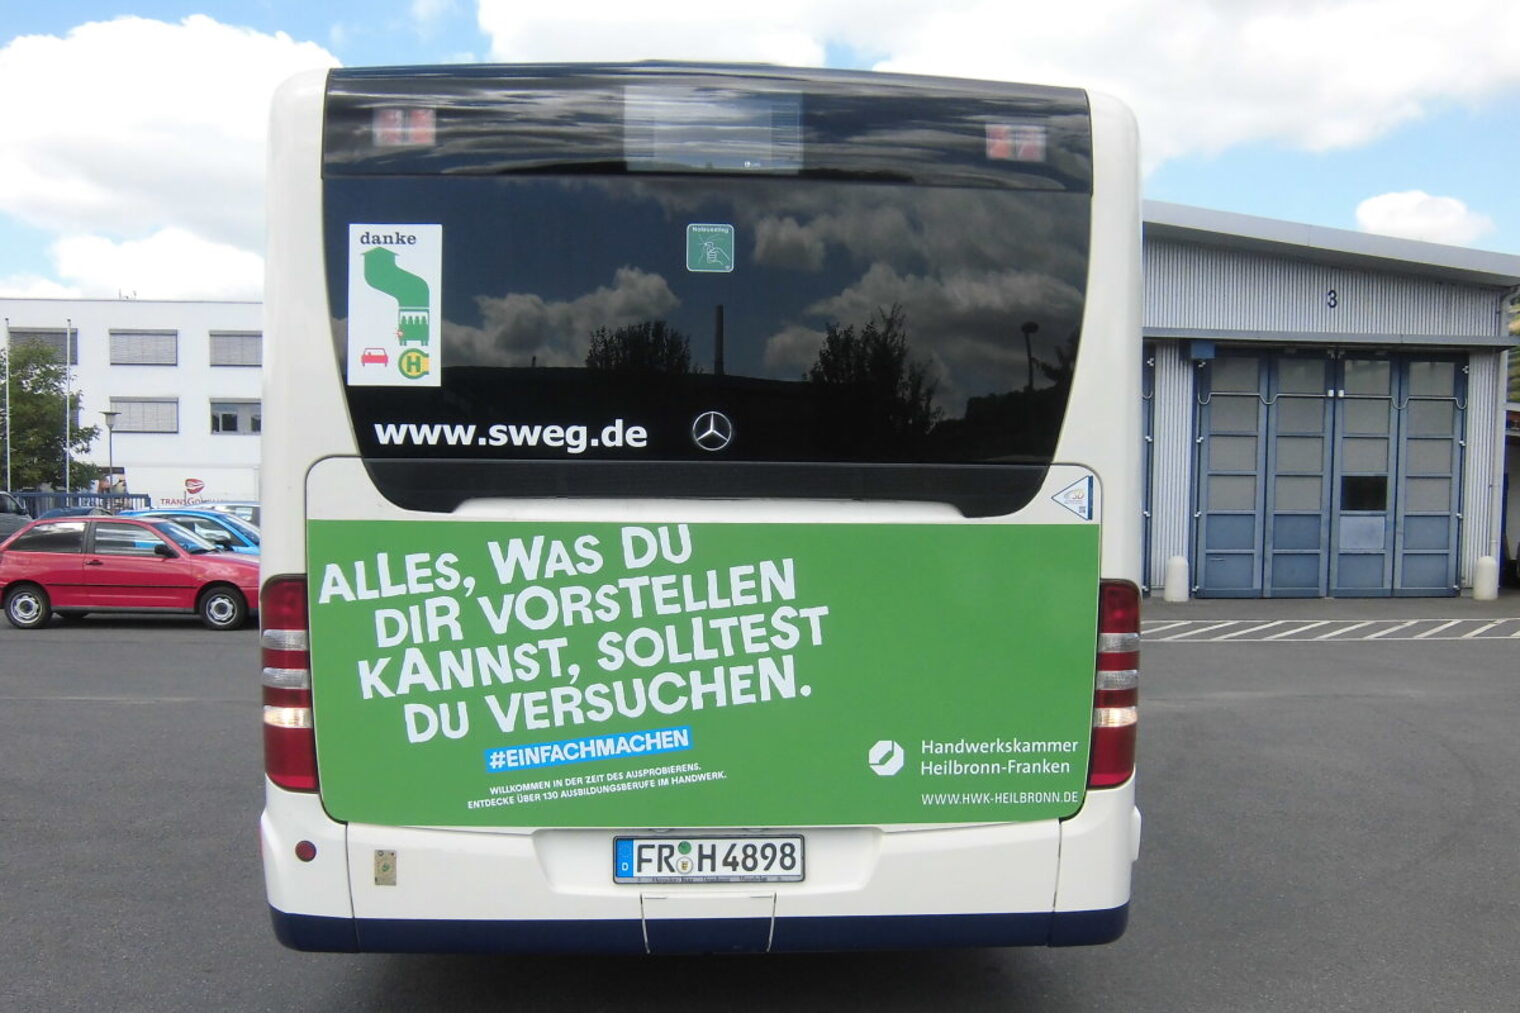 Rückseite eines Busses, beklebt mit grüner Folie mit den Spruch "Alles was du dir vorstellen kannst, solltest du versuchen".